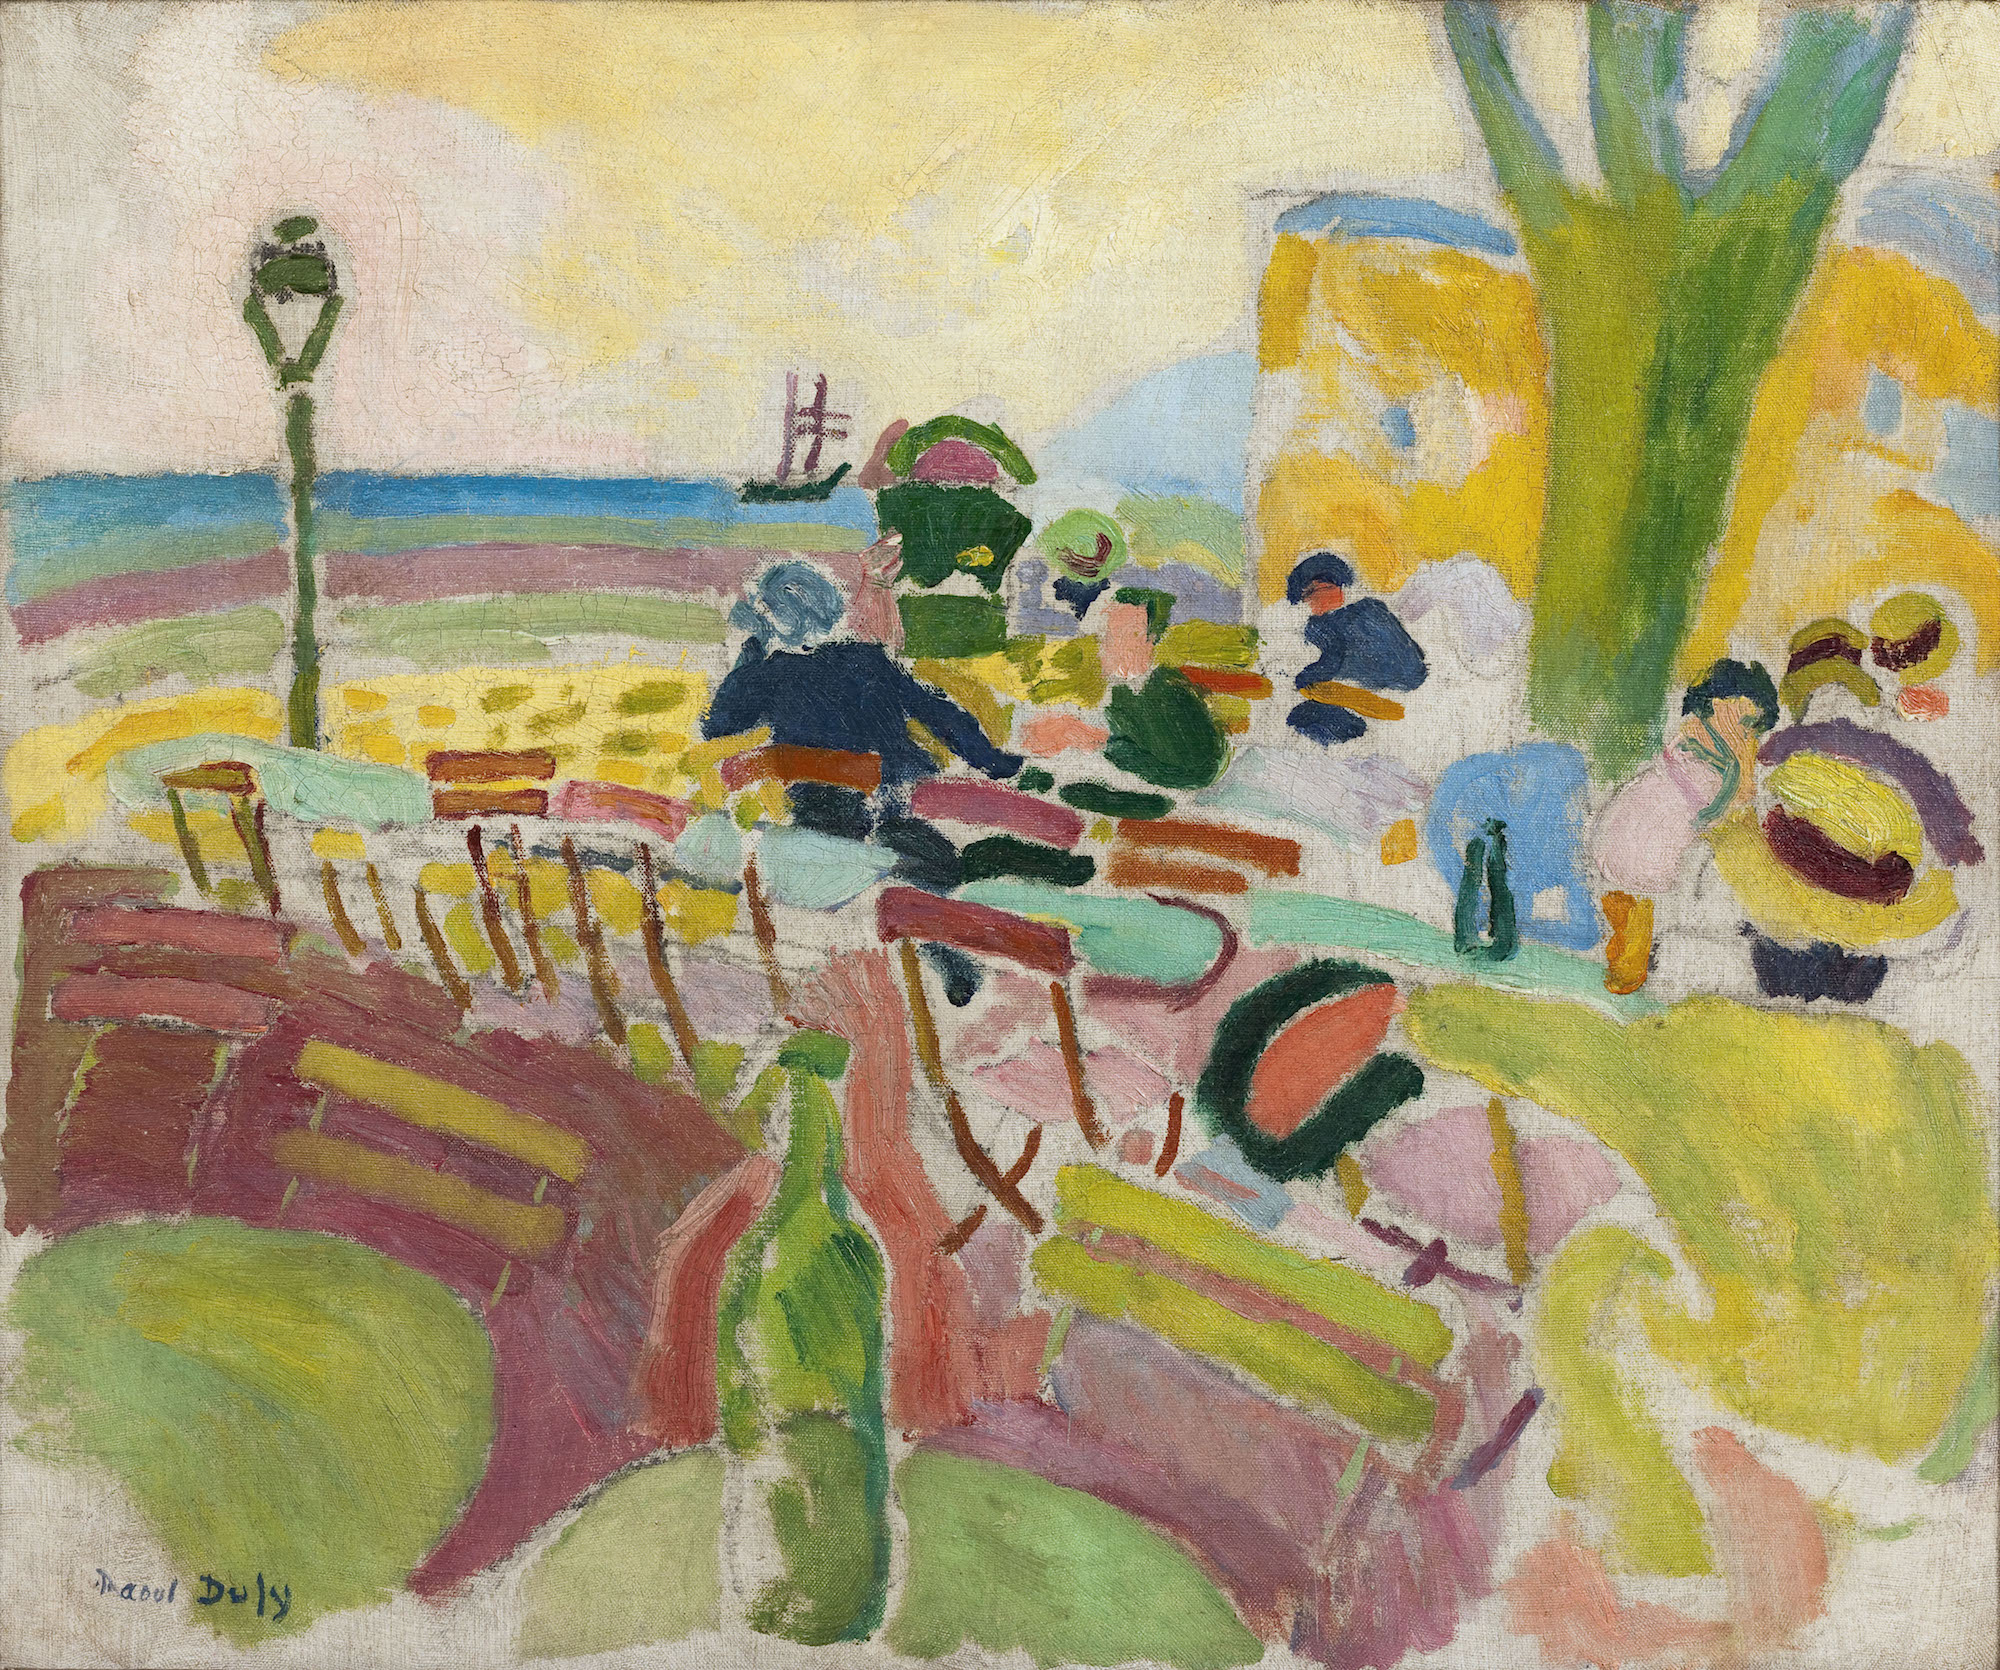 Raoul Dufy (1877-1953), La terrasse sur la plage, 1907. Huile sur toile, 46 x 55 cm. Paris Musées / musée d’Art moderne de Paris. Photo service de presse. © Adagp, Paris, 2023